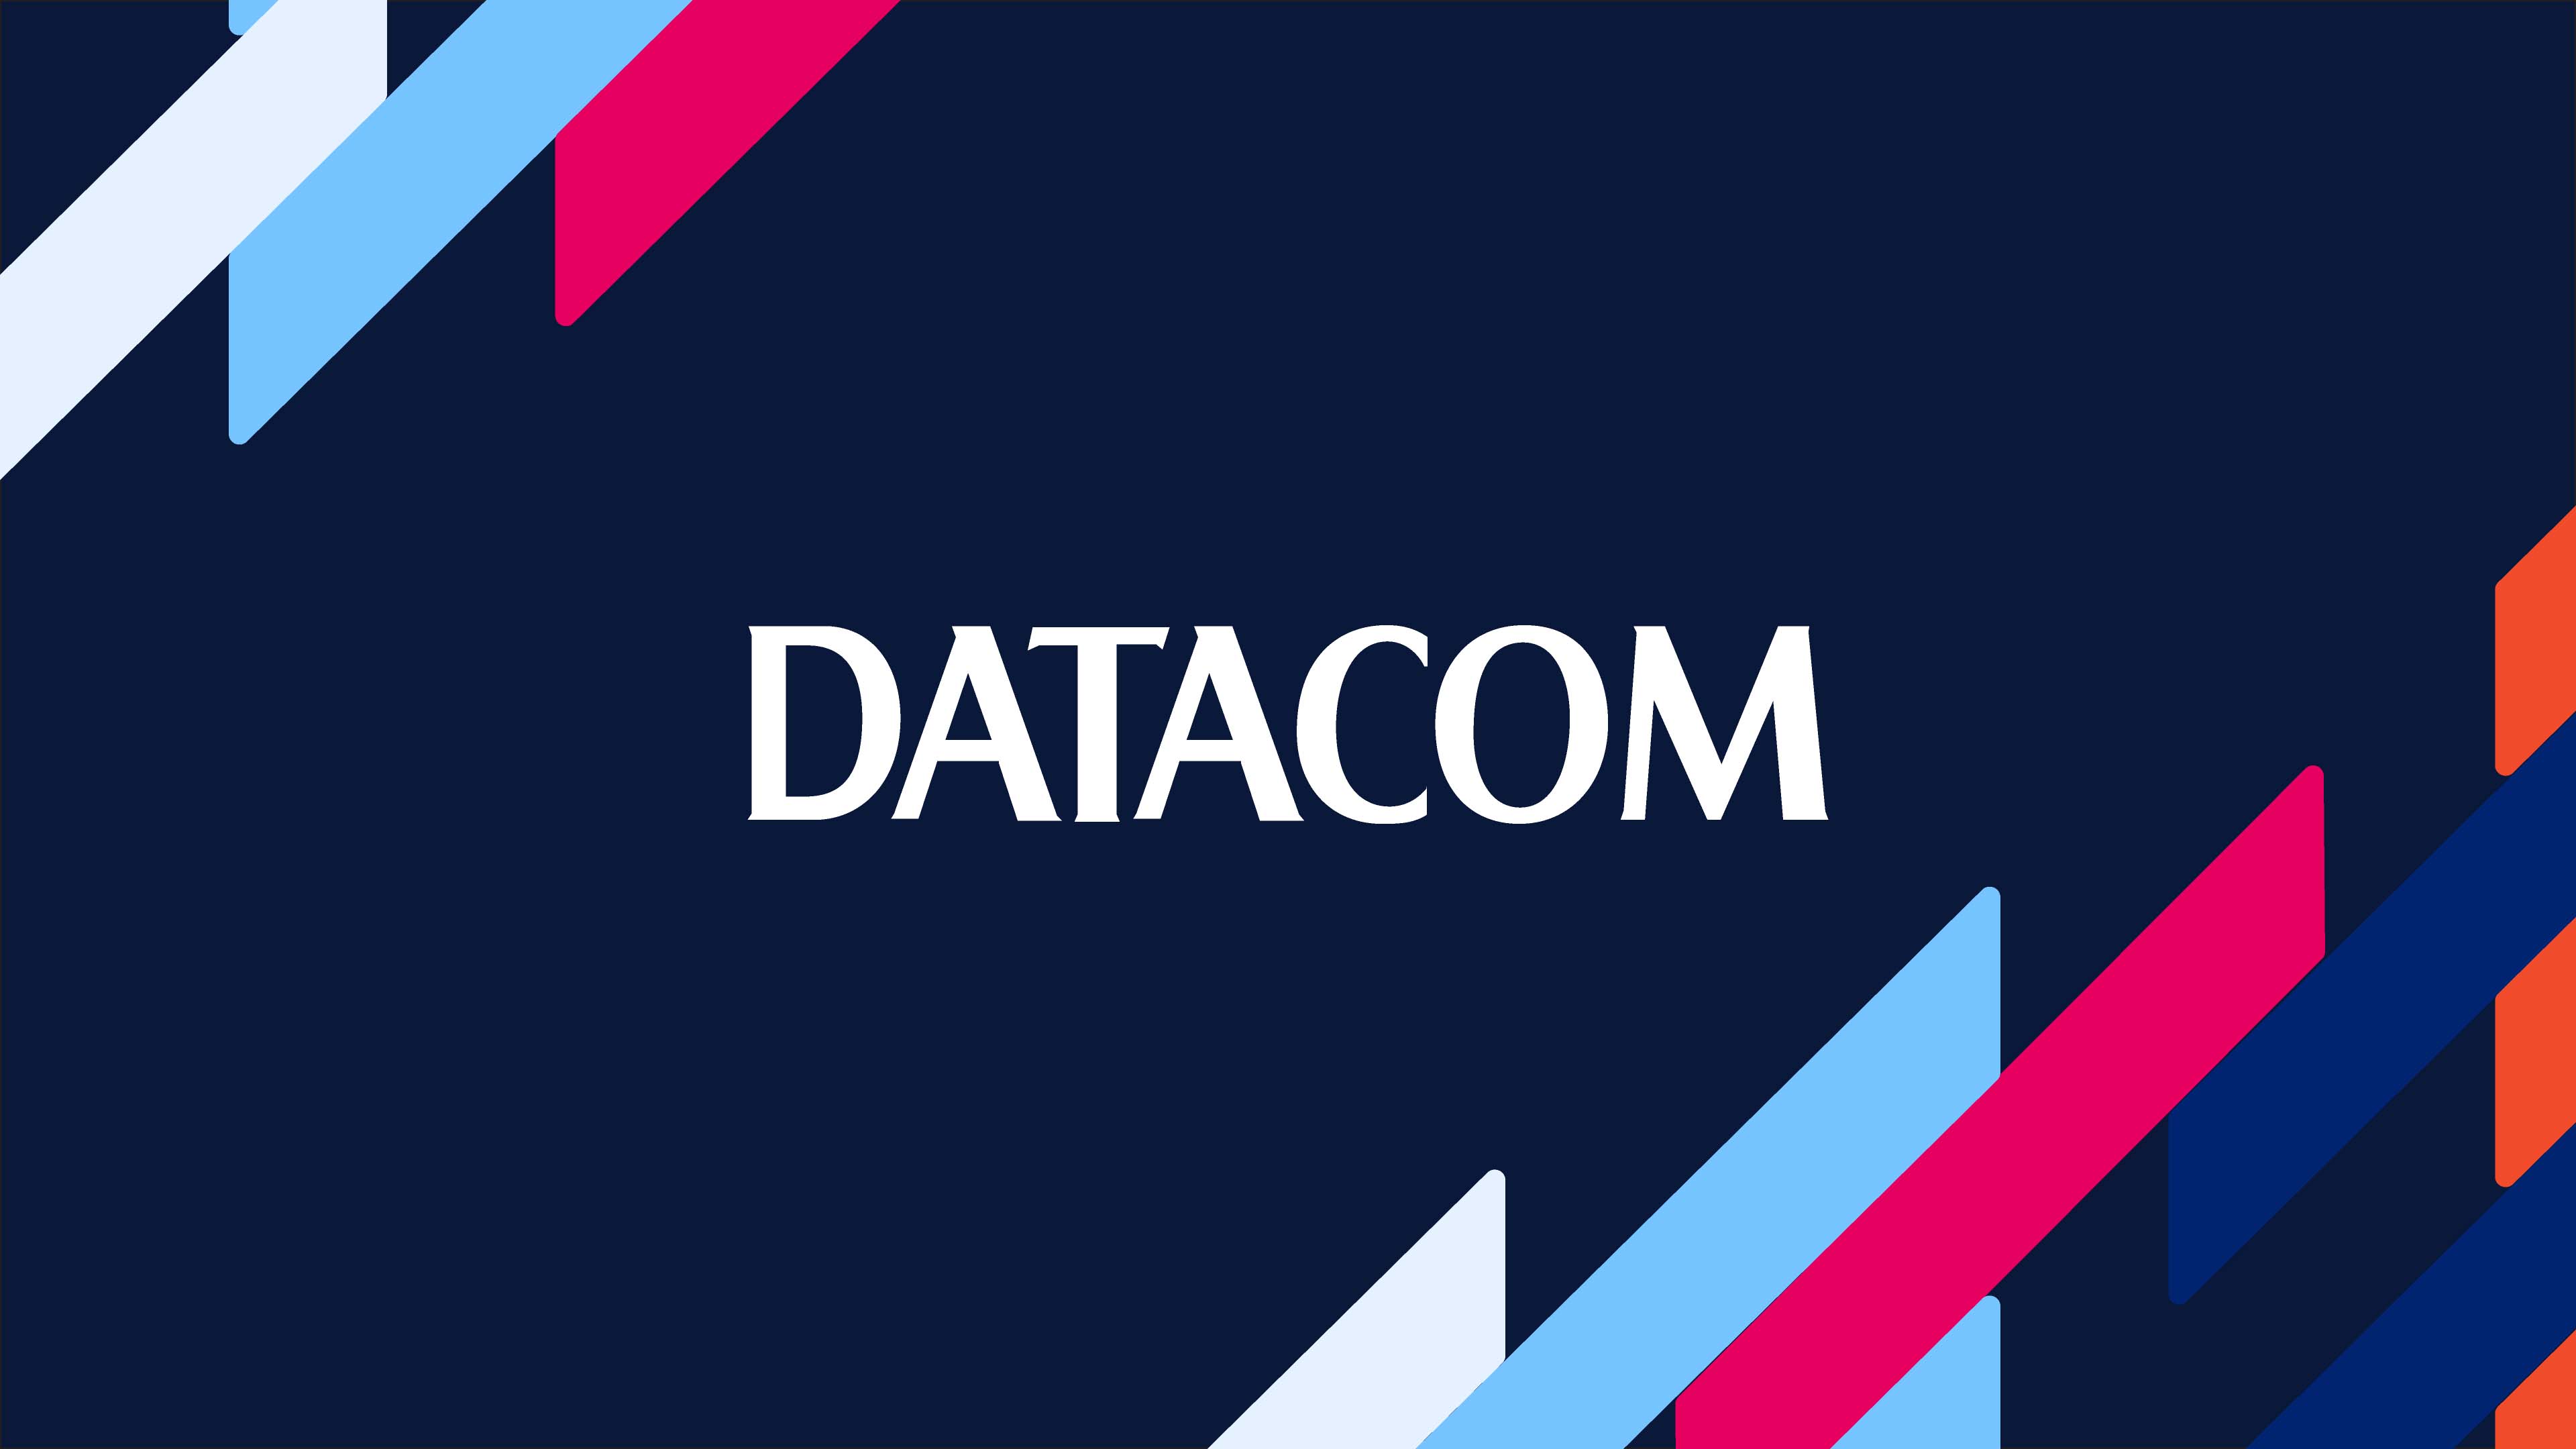 Datacom logo surrounded by brand elements